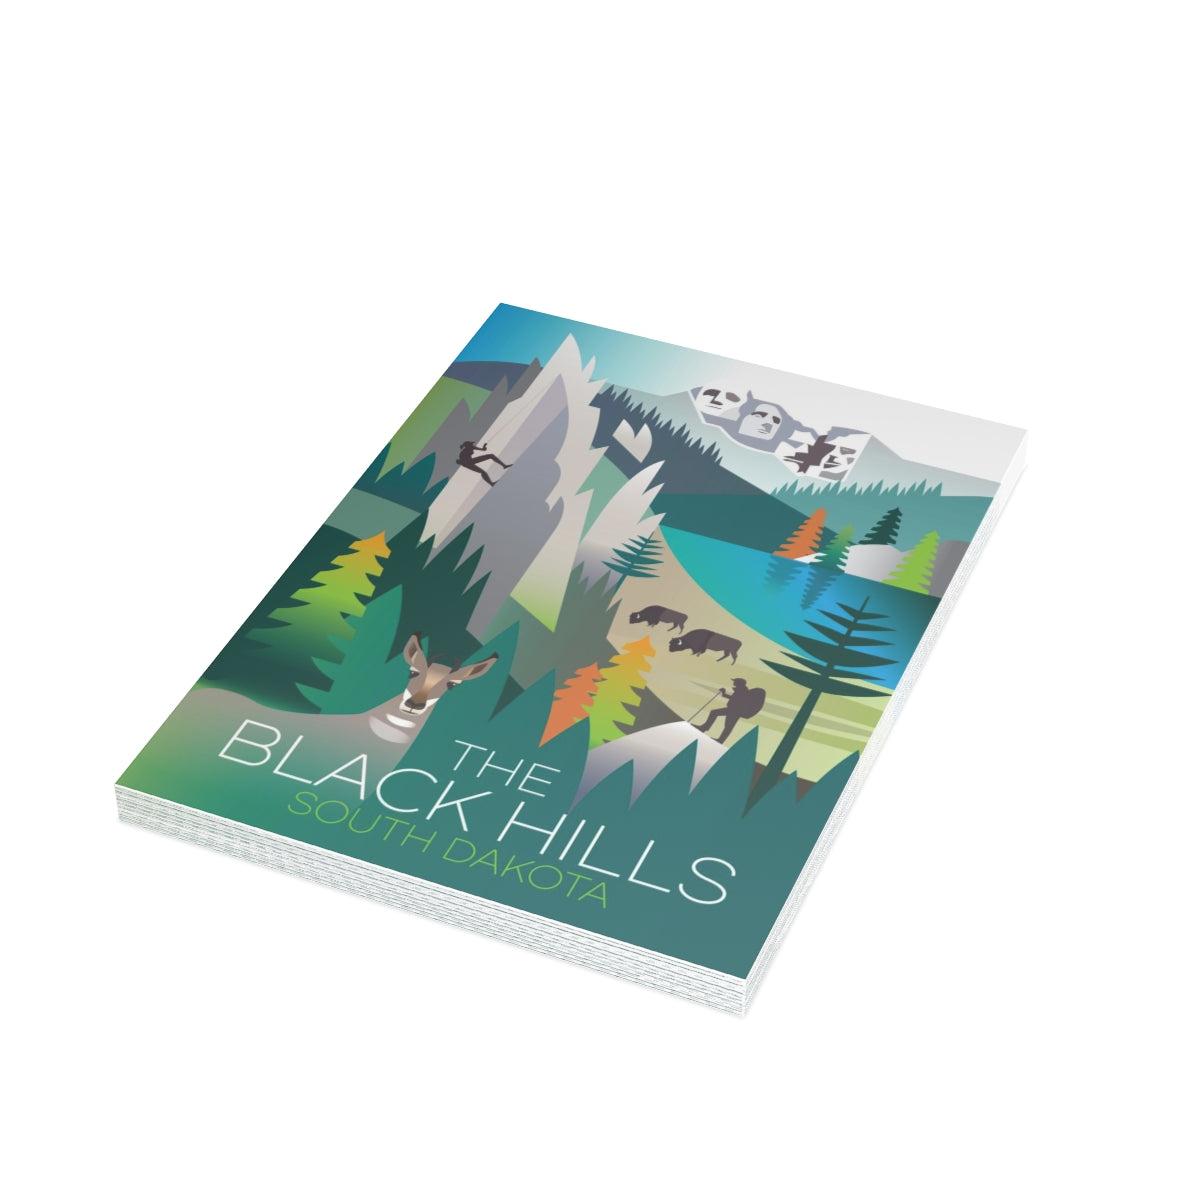 The Black Hills gefaltete matte Notizkarten + Umschläge (10 Stück)